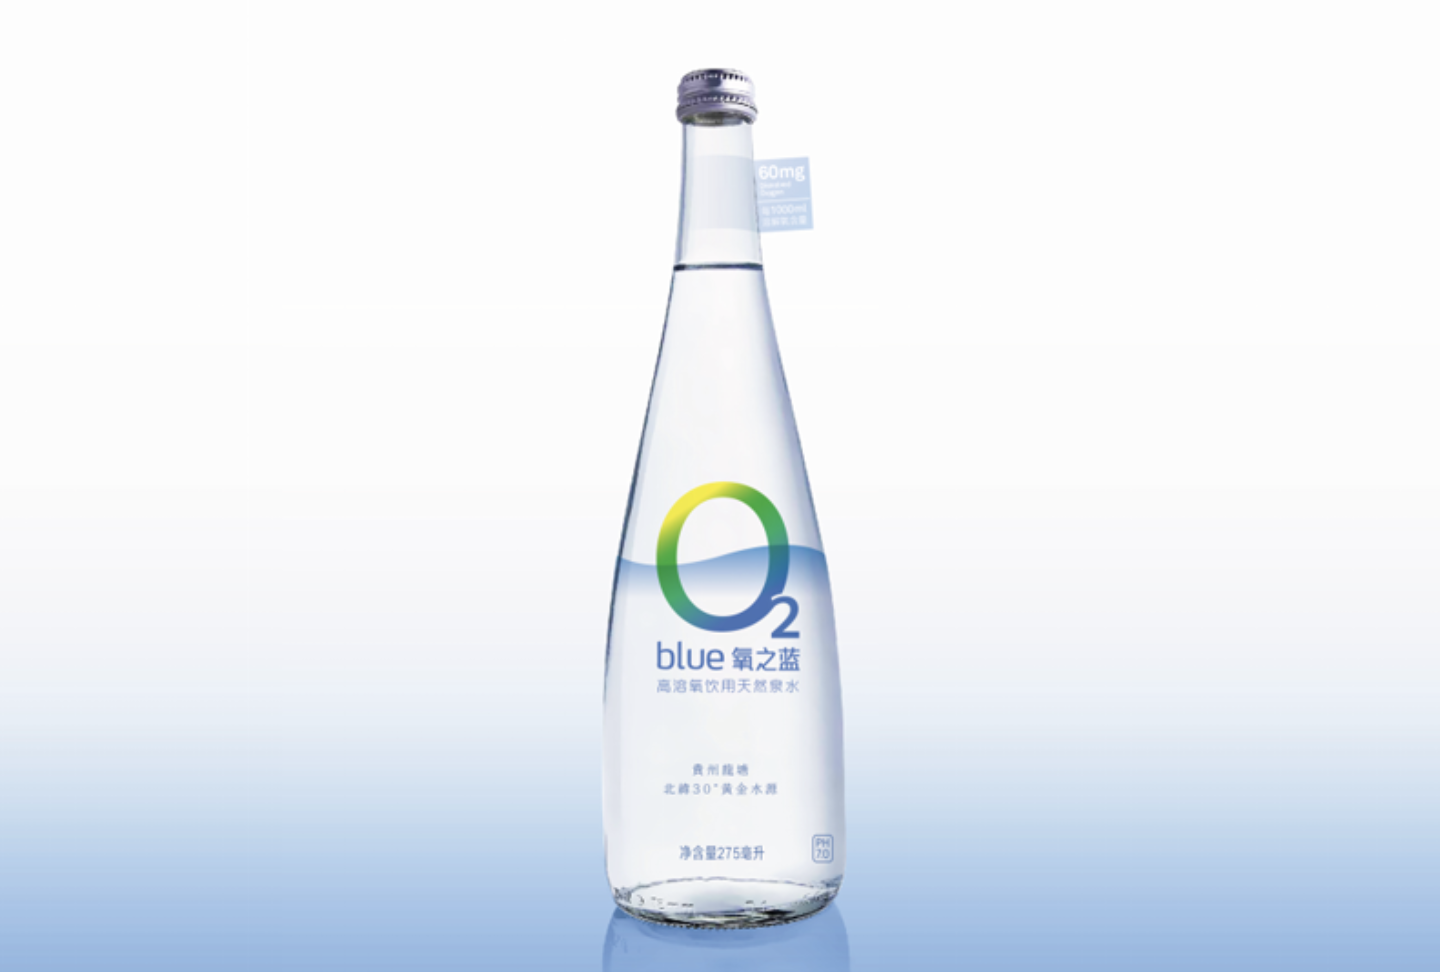 小众健康水的品牌logo应该如何设计